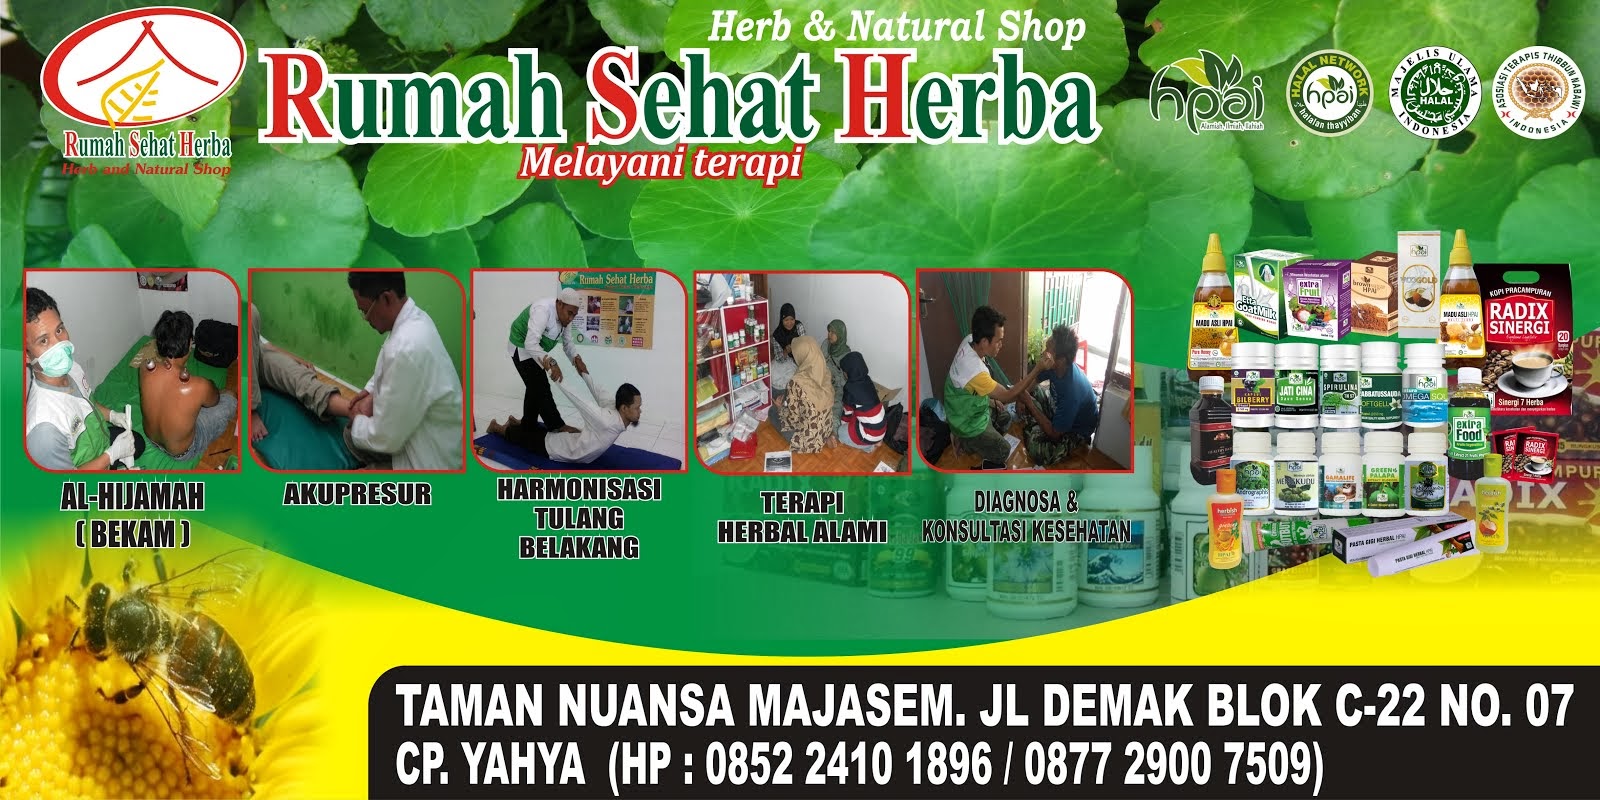 Rumah Sehat Herba (RSH) HPAI Cirebon: Terapi Bekam & Pijat Cirebon